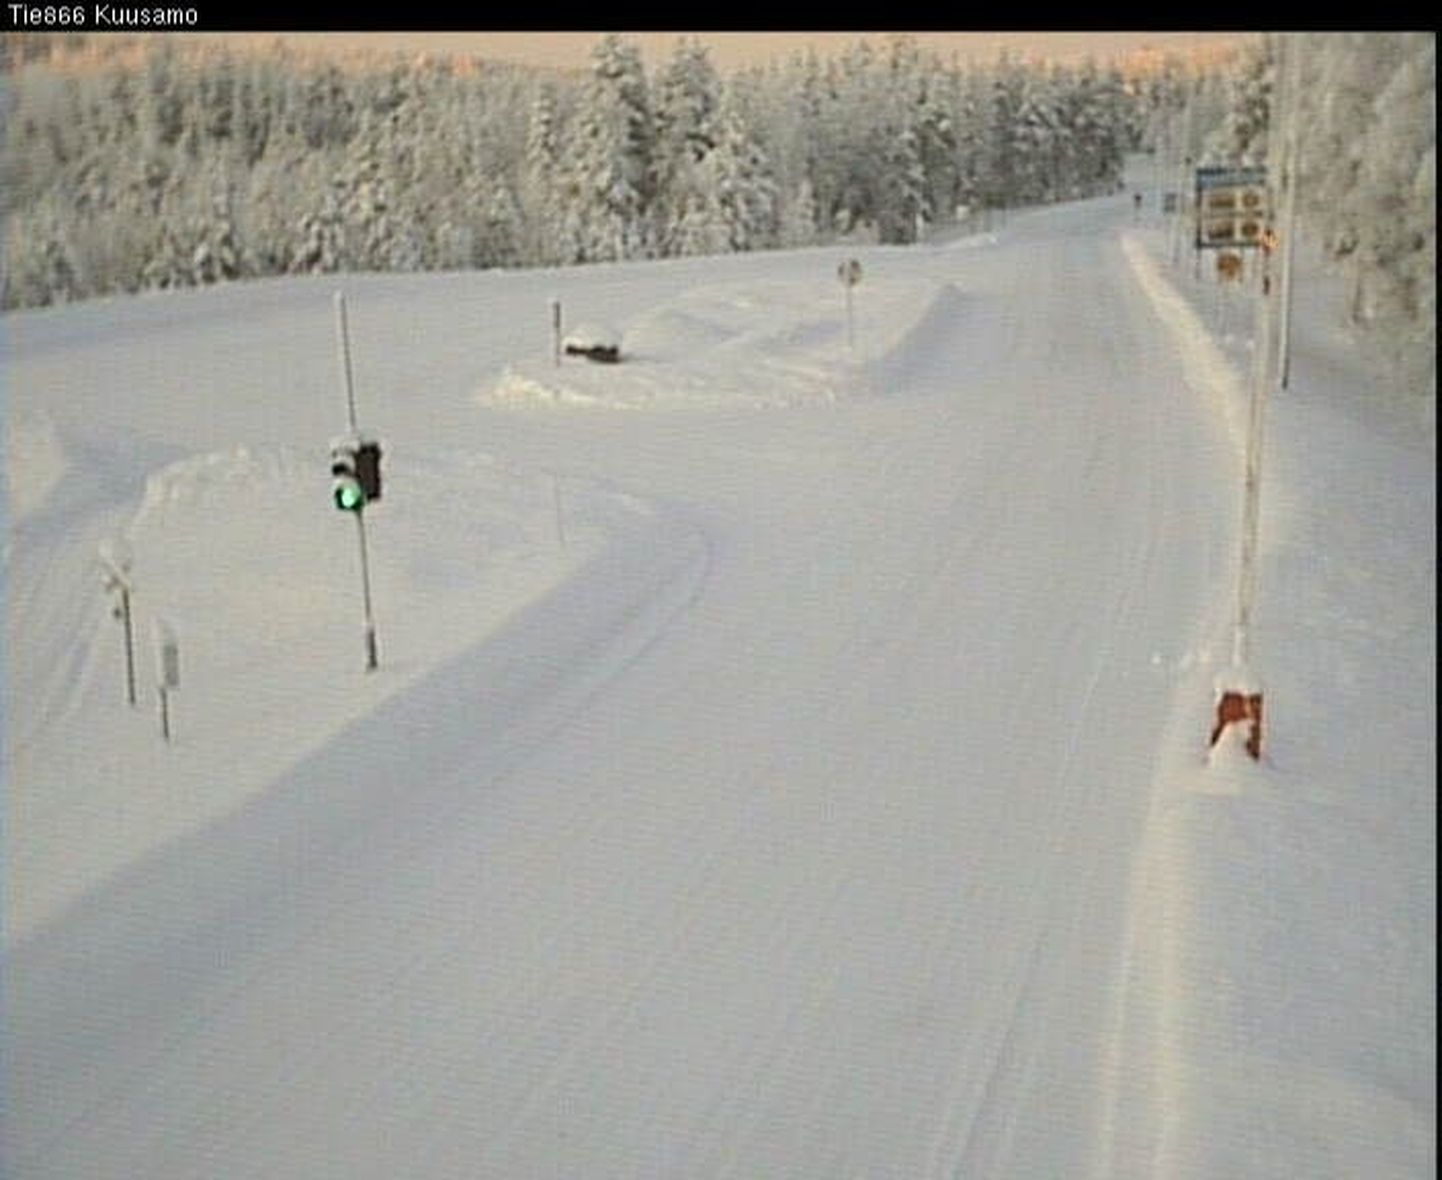 Maanteekaamerast saadud pilt Kuusamos Kuolio külas, kus kell 9.17 mõõdeti -35,4 kraadi.